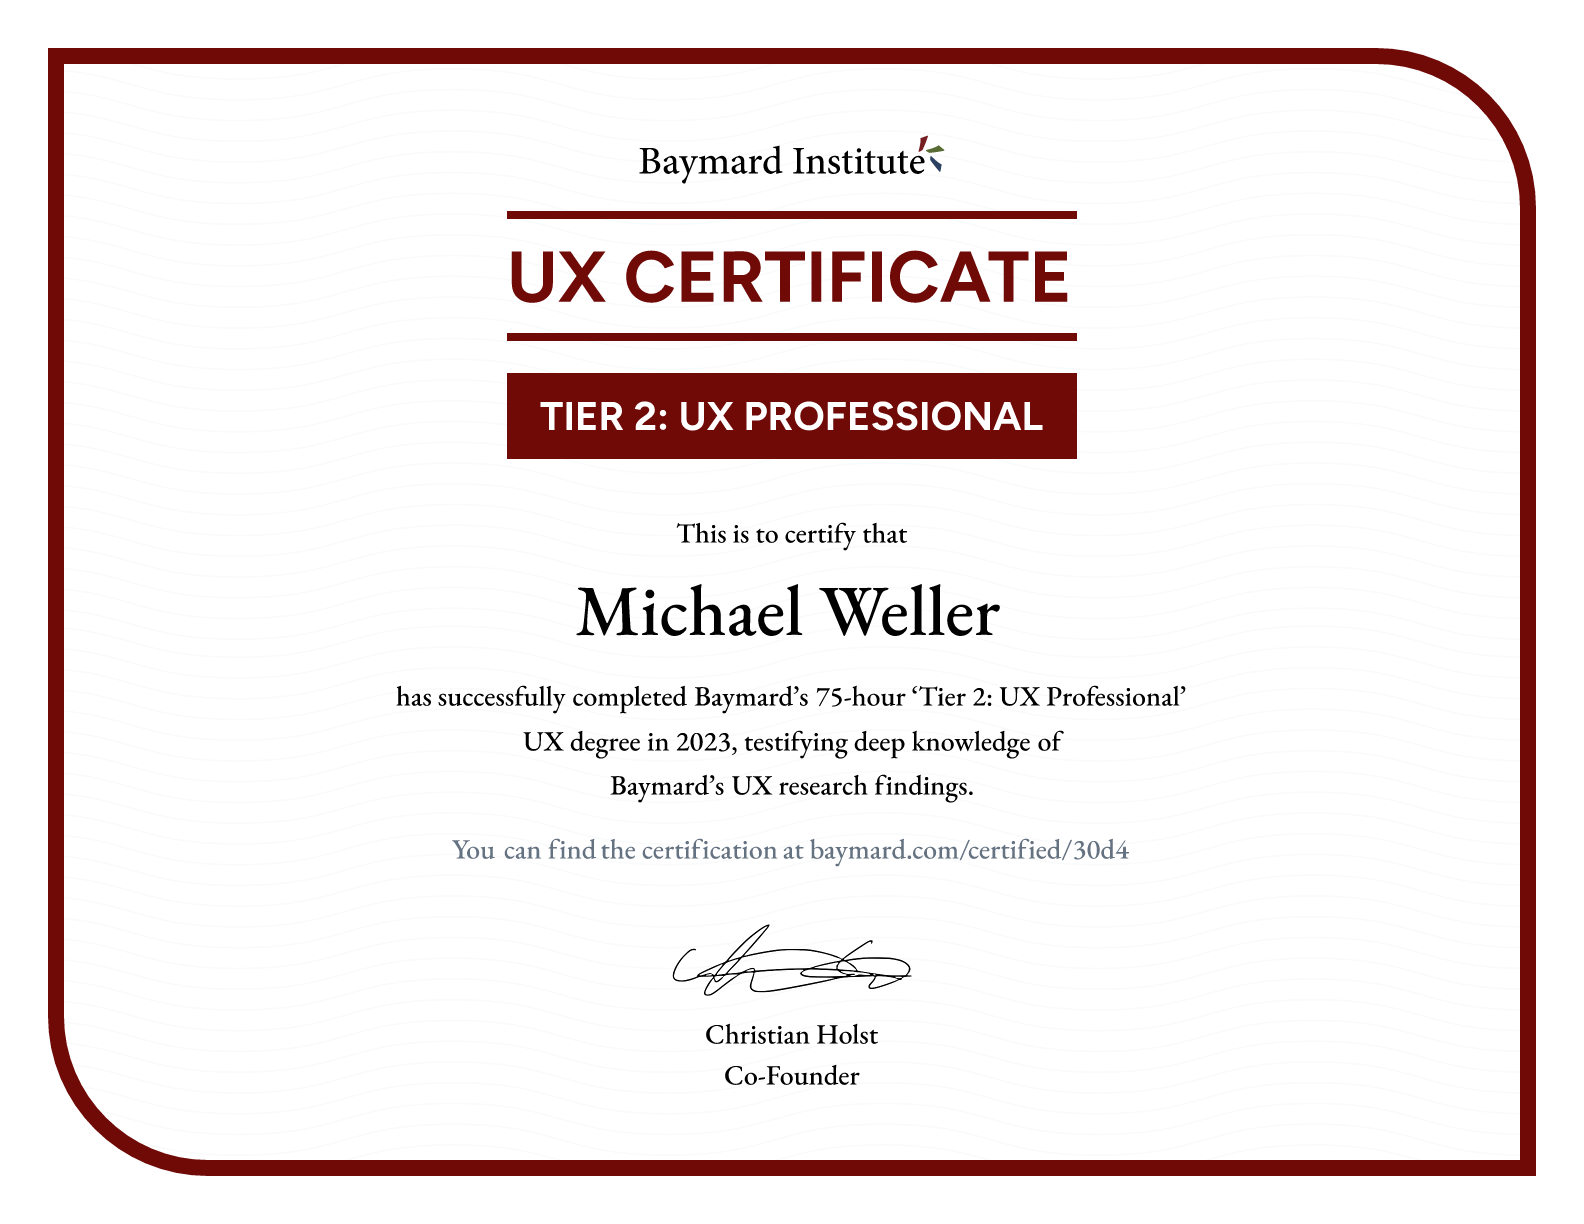 Michael Weller’s certificate